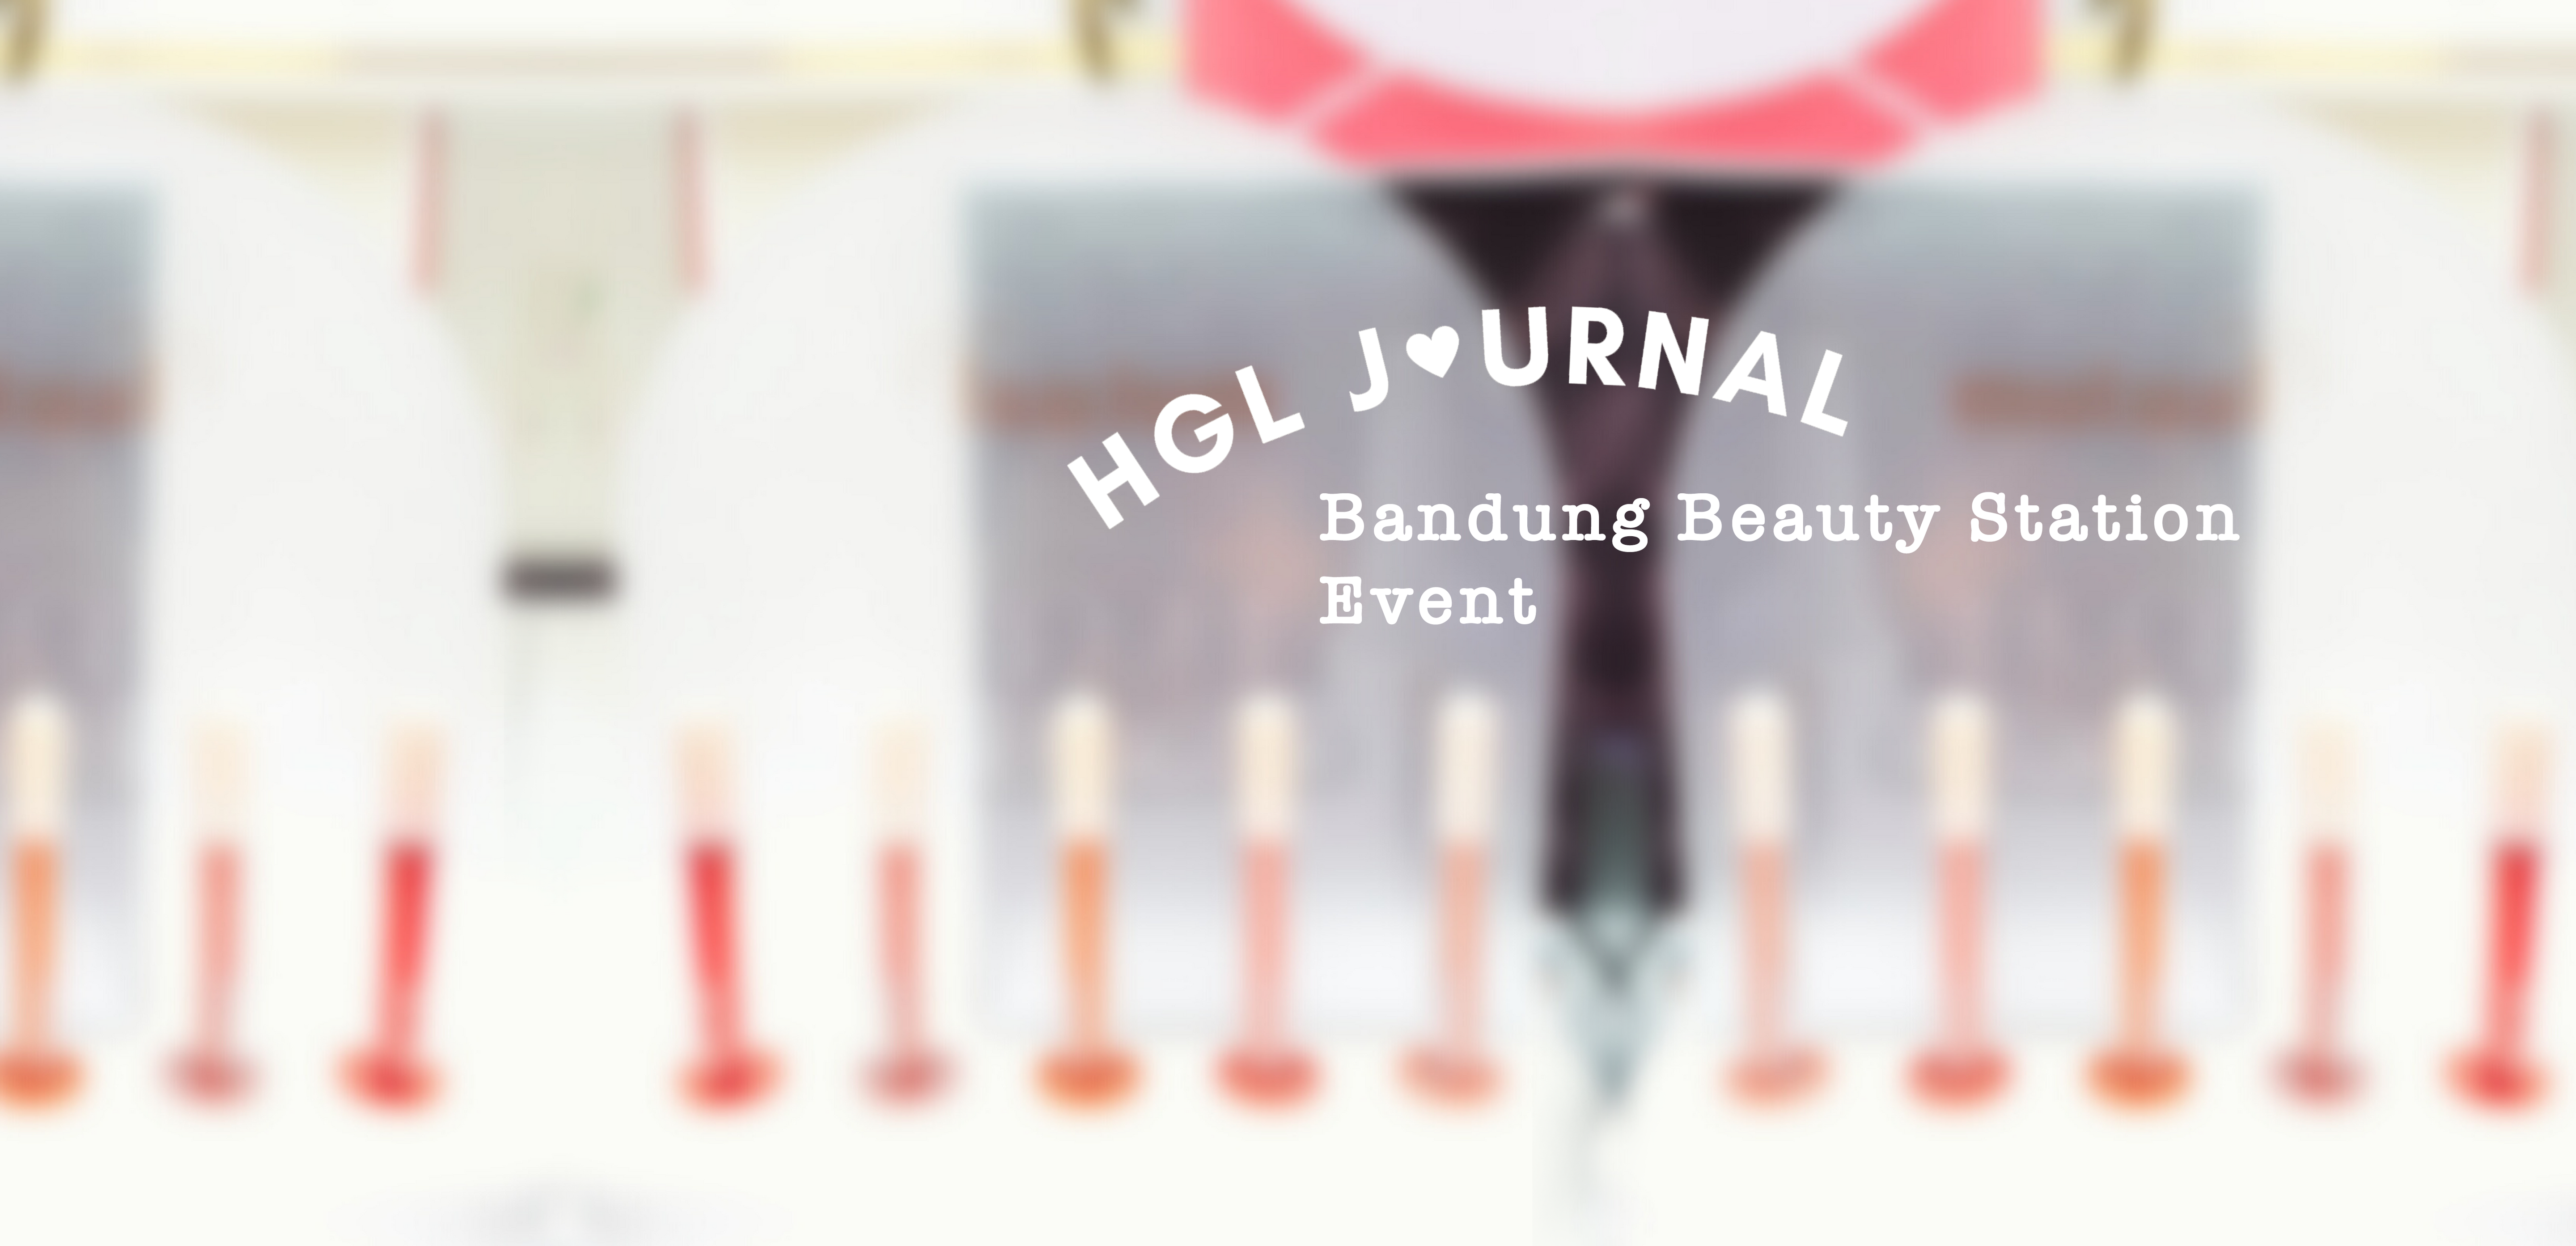 HGL Journal: Bandung Beauty Station Event